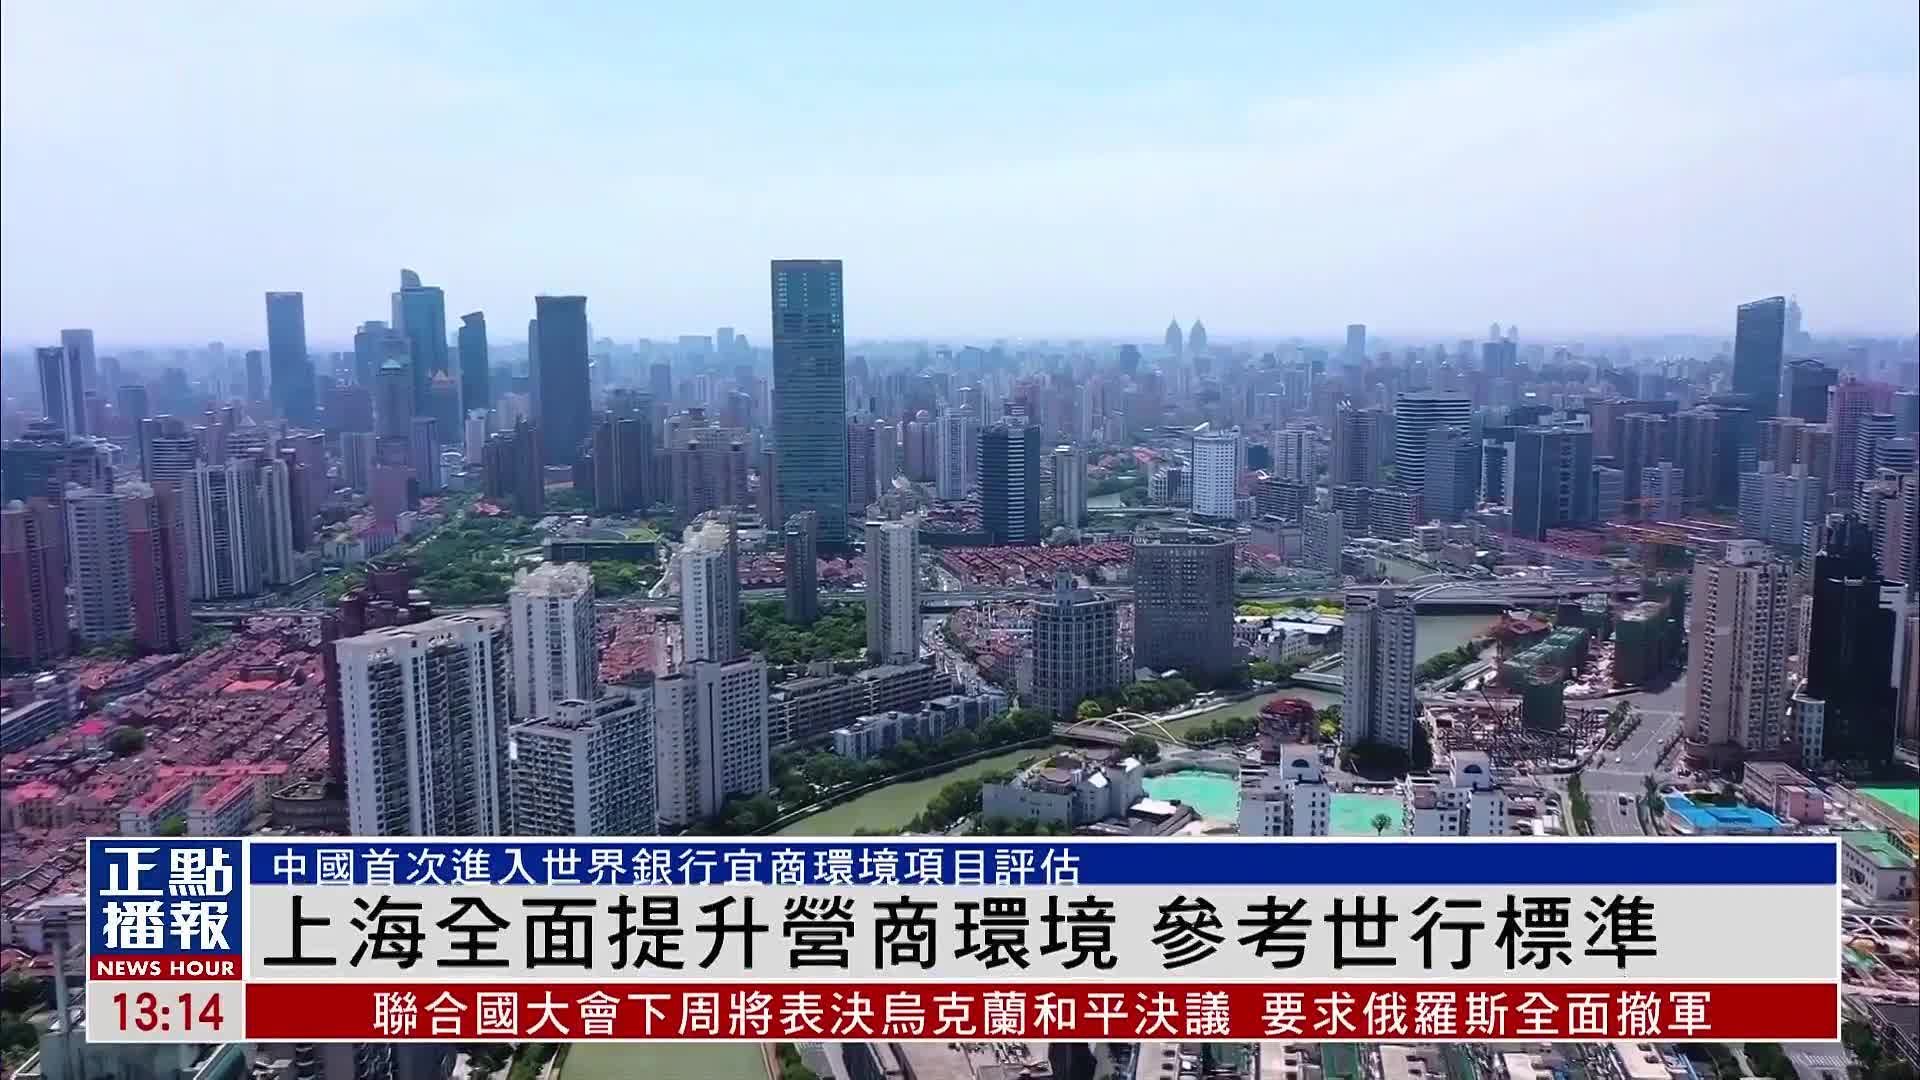 上海全面提升营商环境 参考世界银行标准